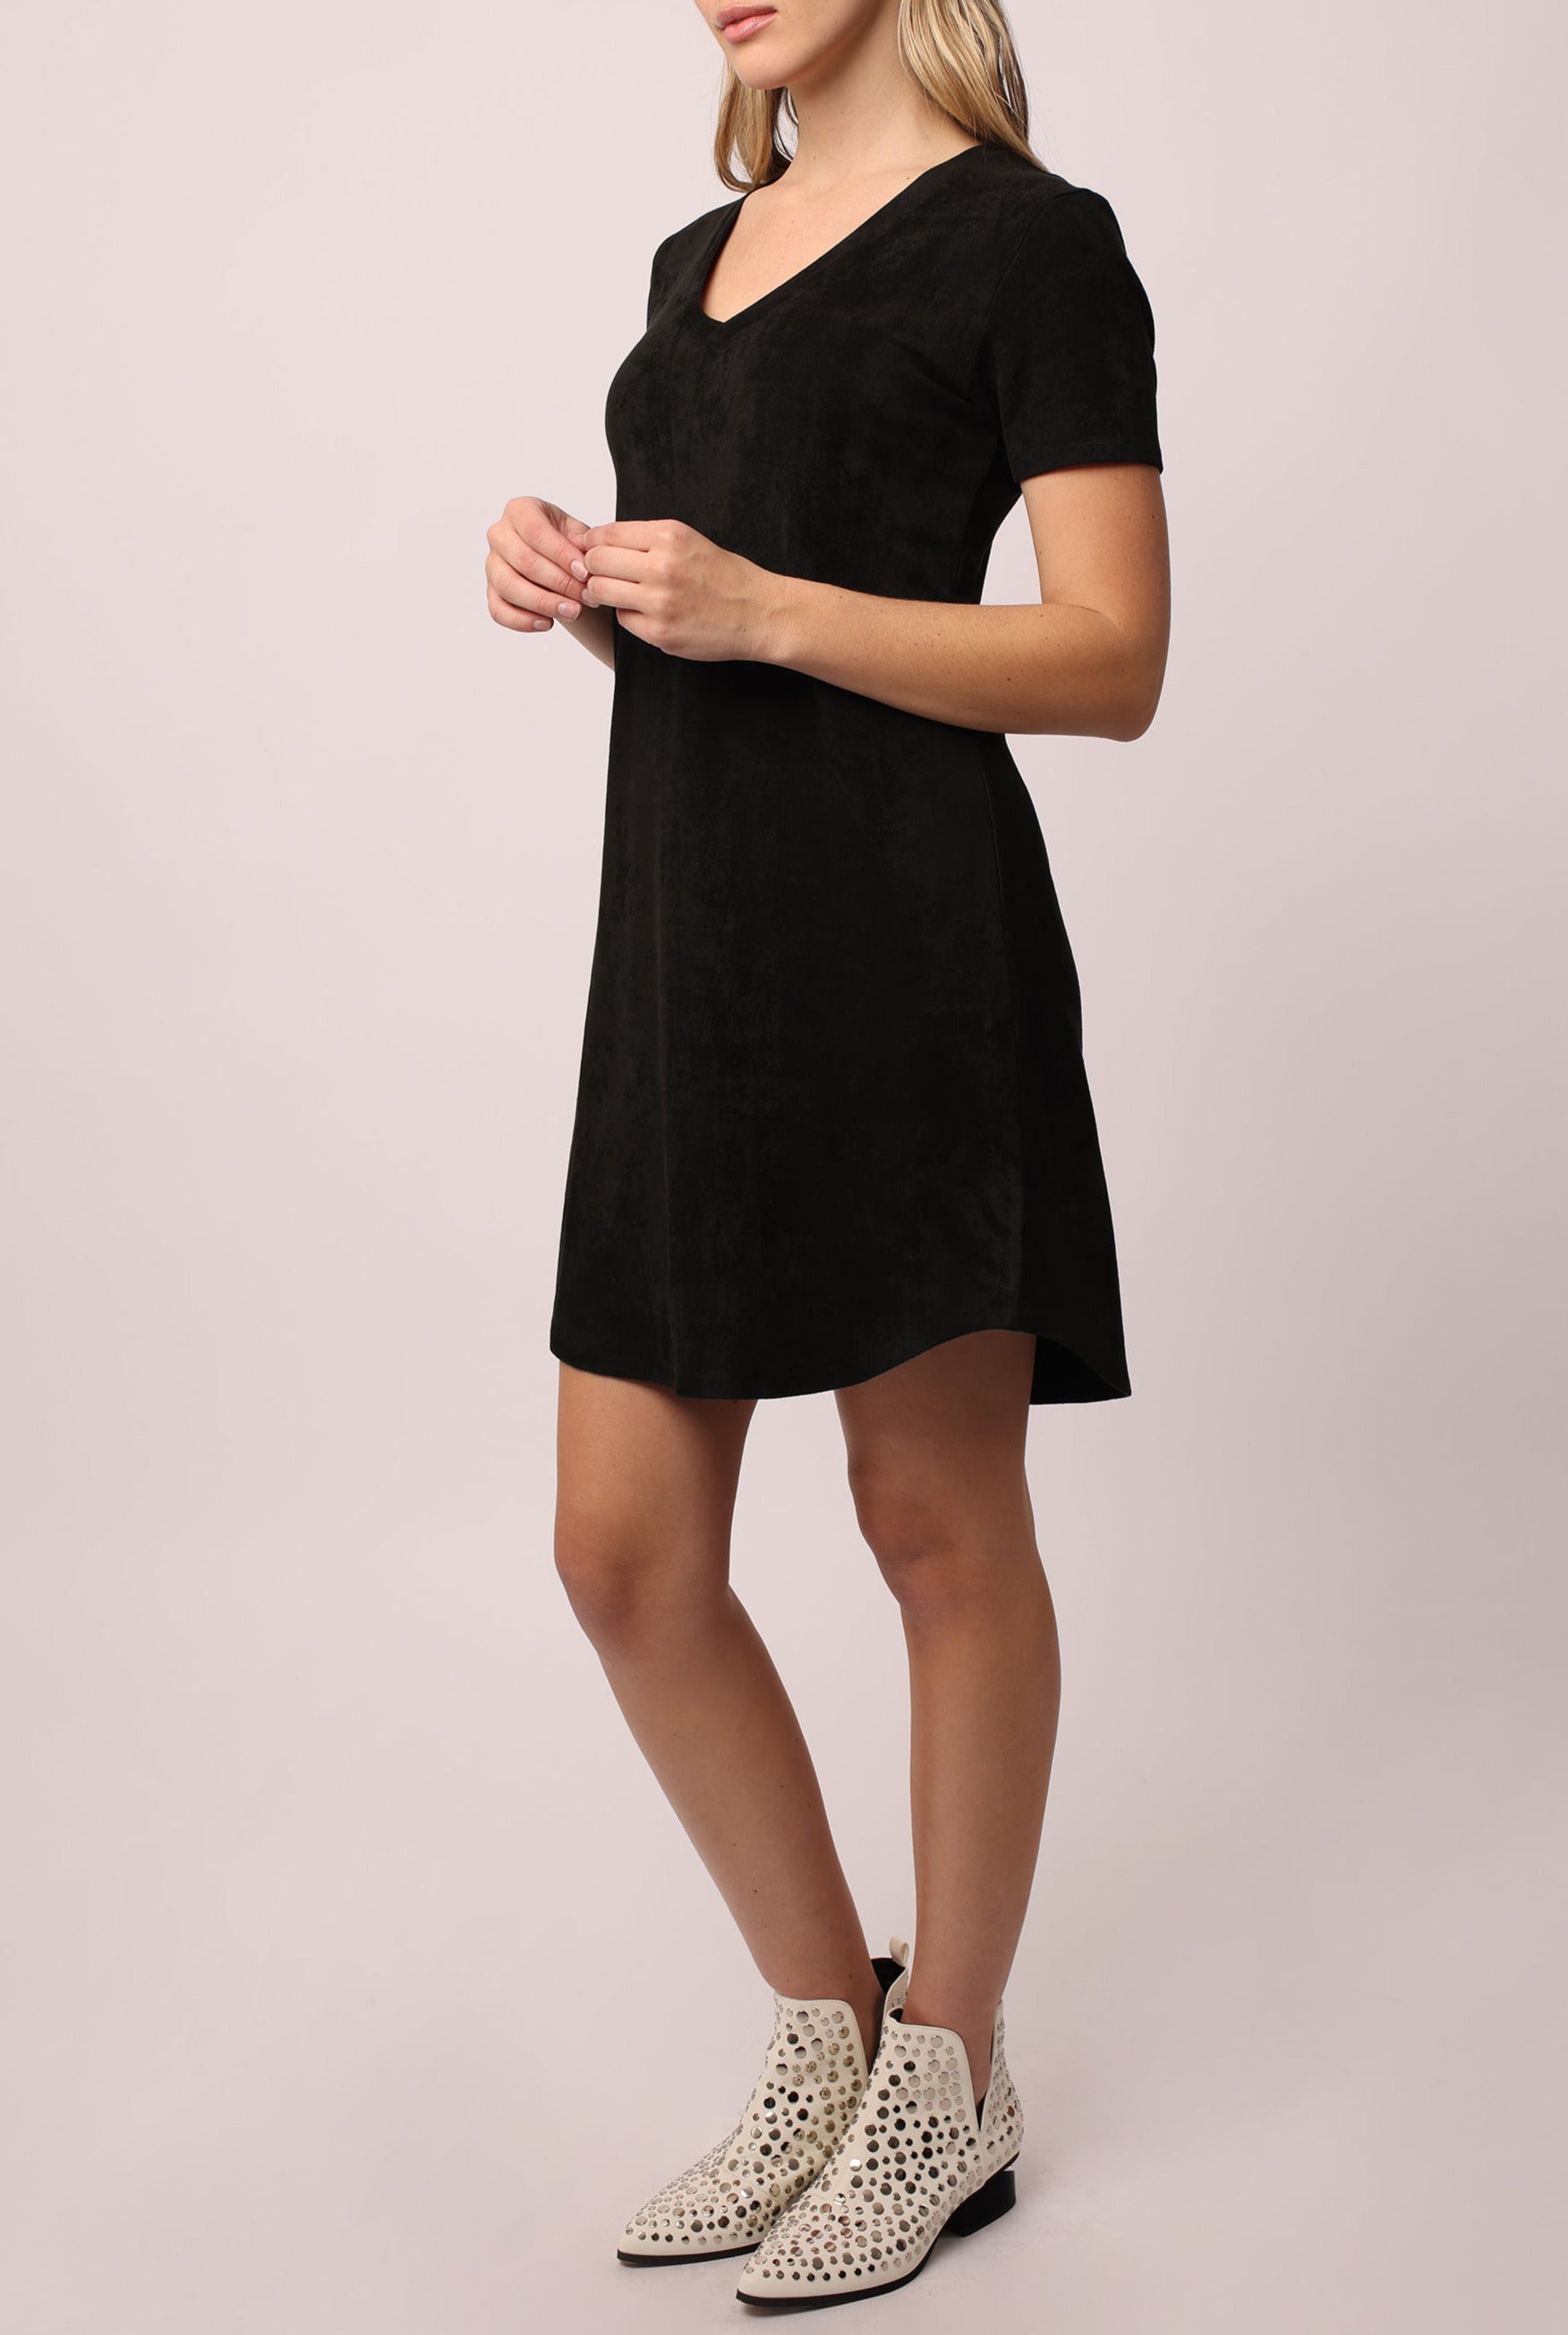 aria-vneck-side-pocket-dress-black